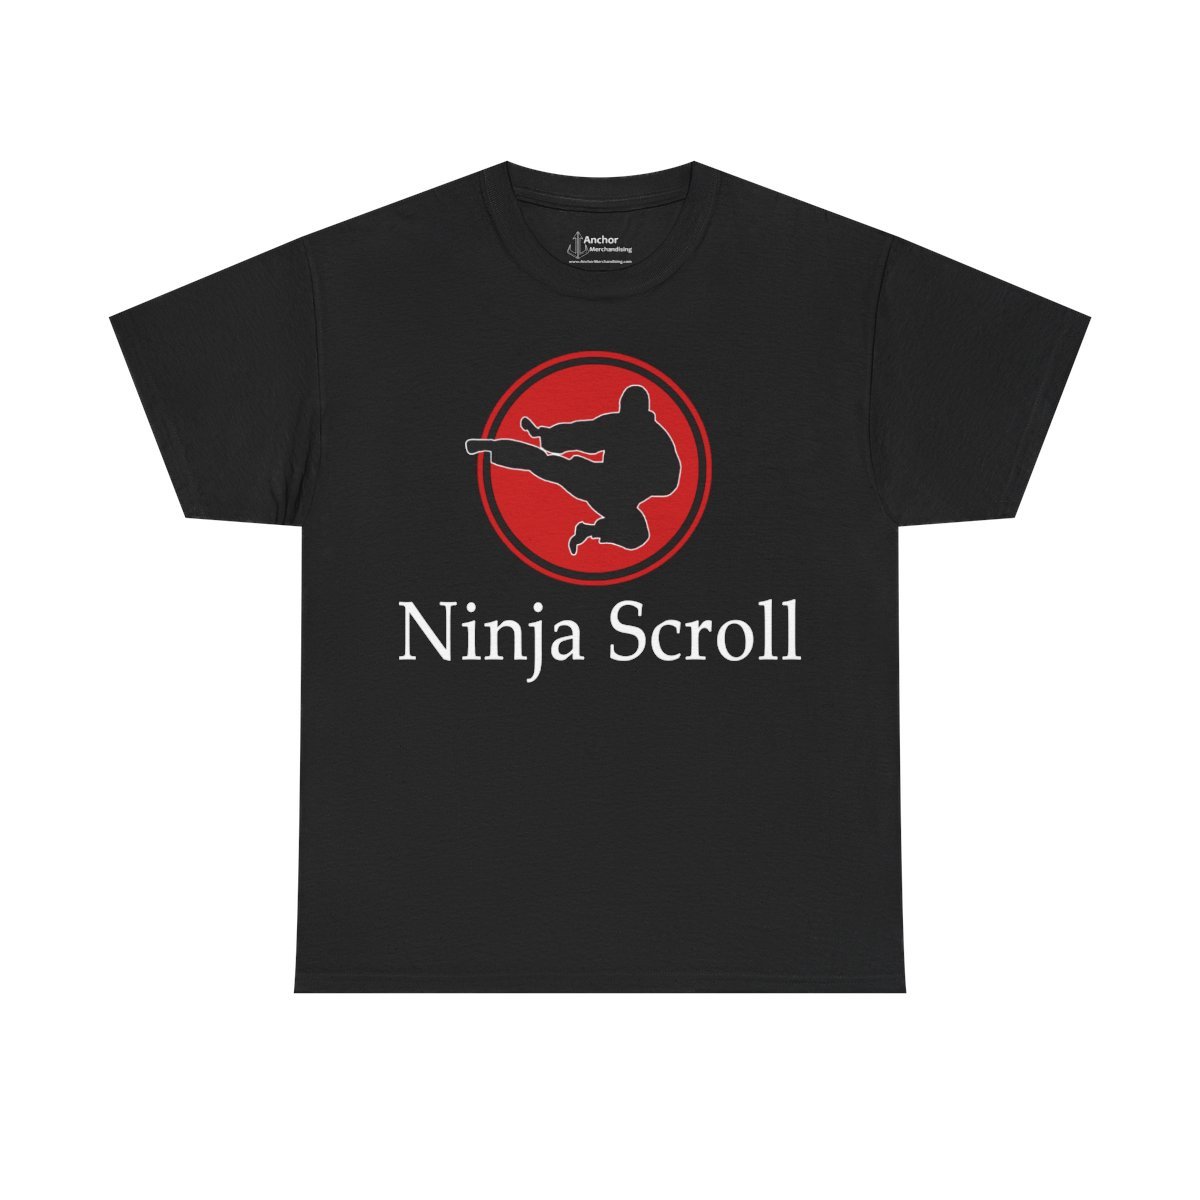 Ninja Scroll Flying Kick Short Sleeve Tshirt